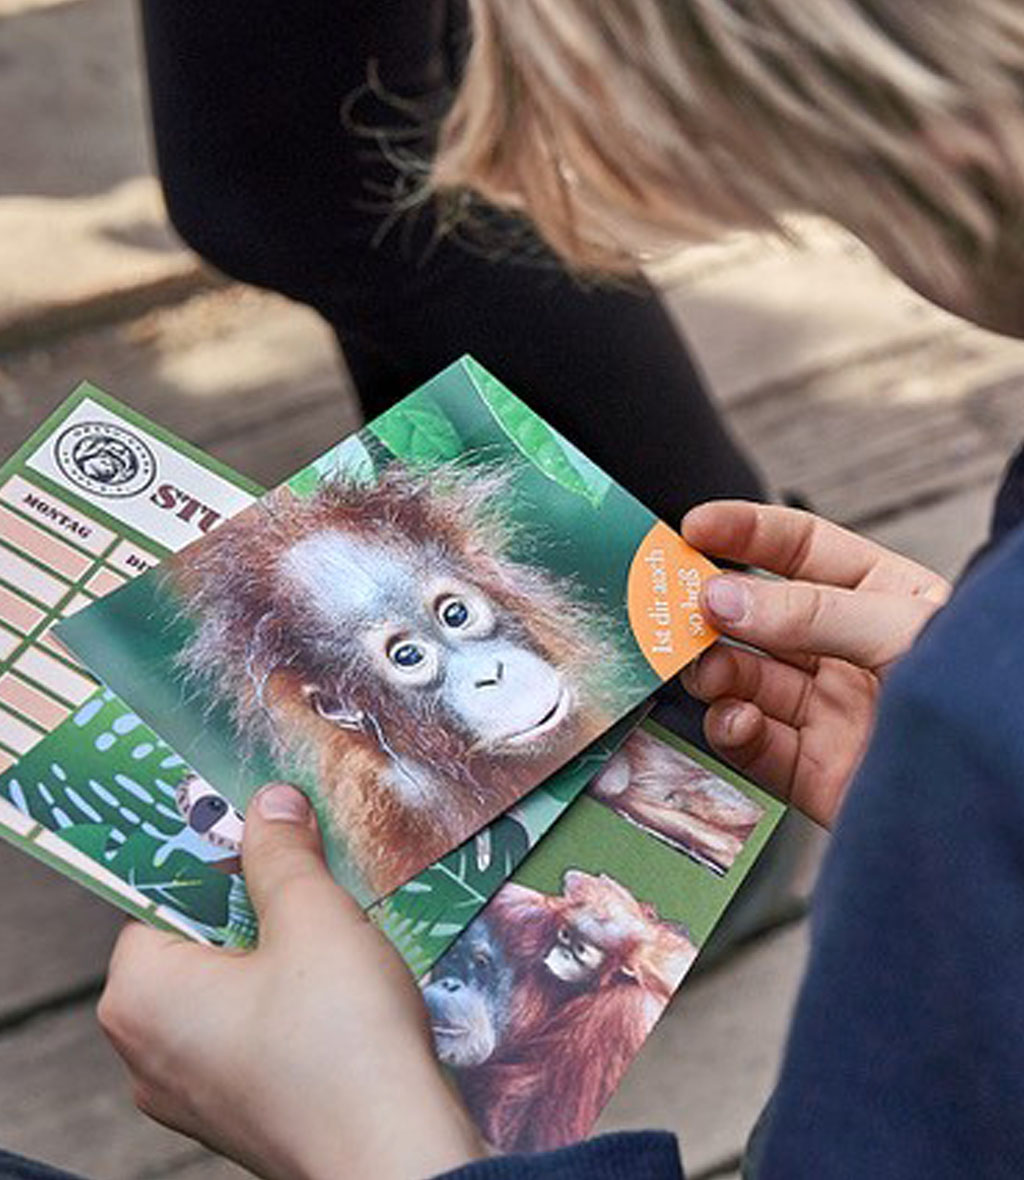 Kind hält eine Postkarte mit einem Orang-Utan-Kind darauf und andere Printmedien in der Hand.